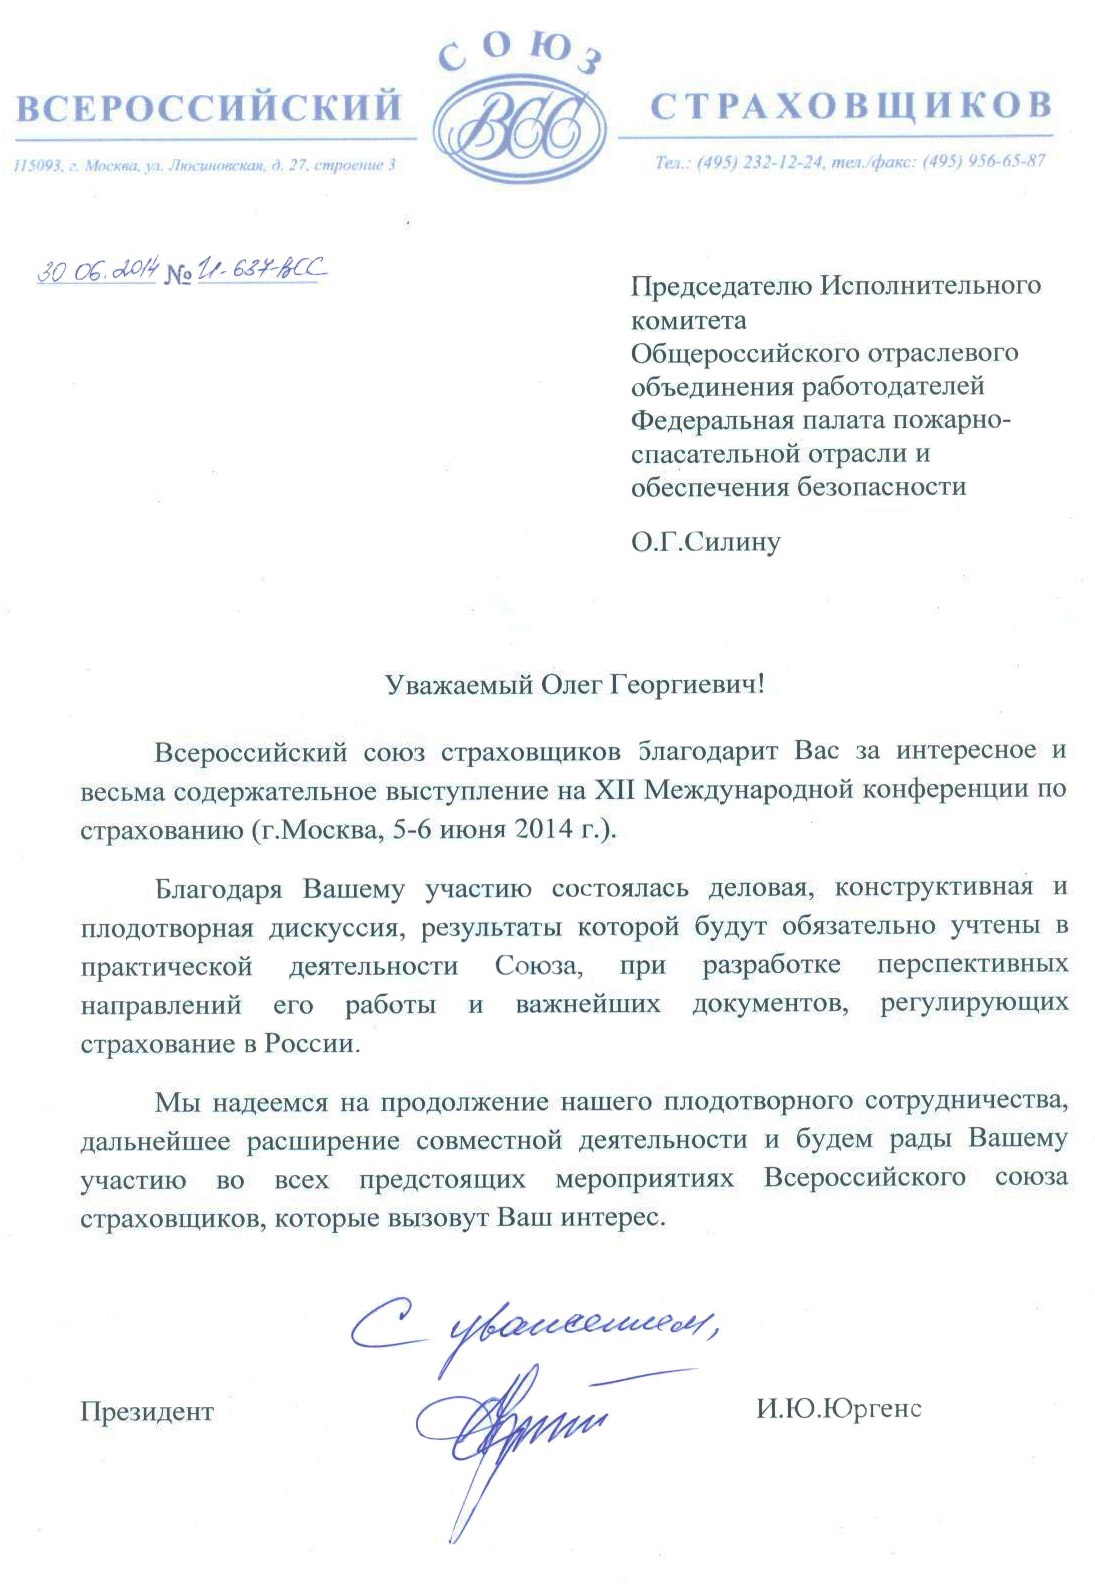 Всероссийский союз страховщиков направил благодарственное письмо в Федеральную Палату